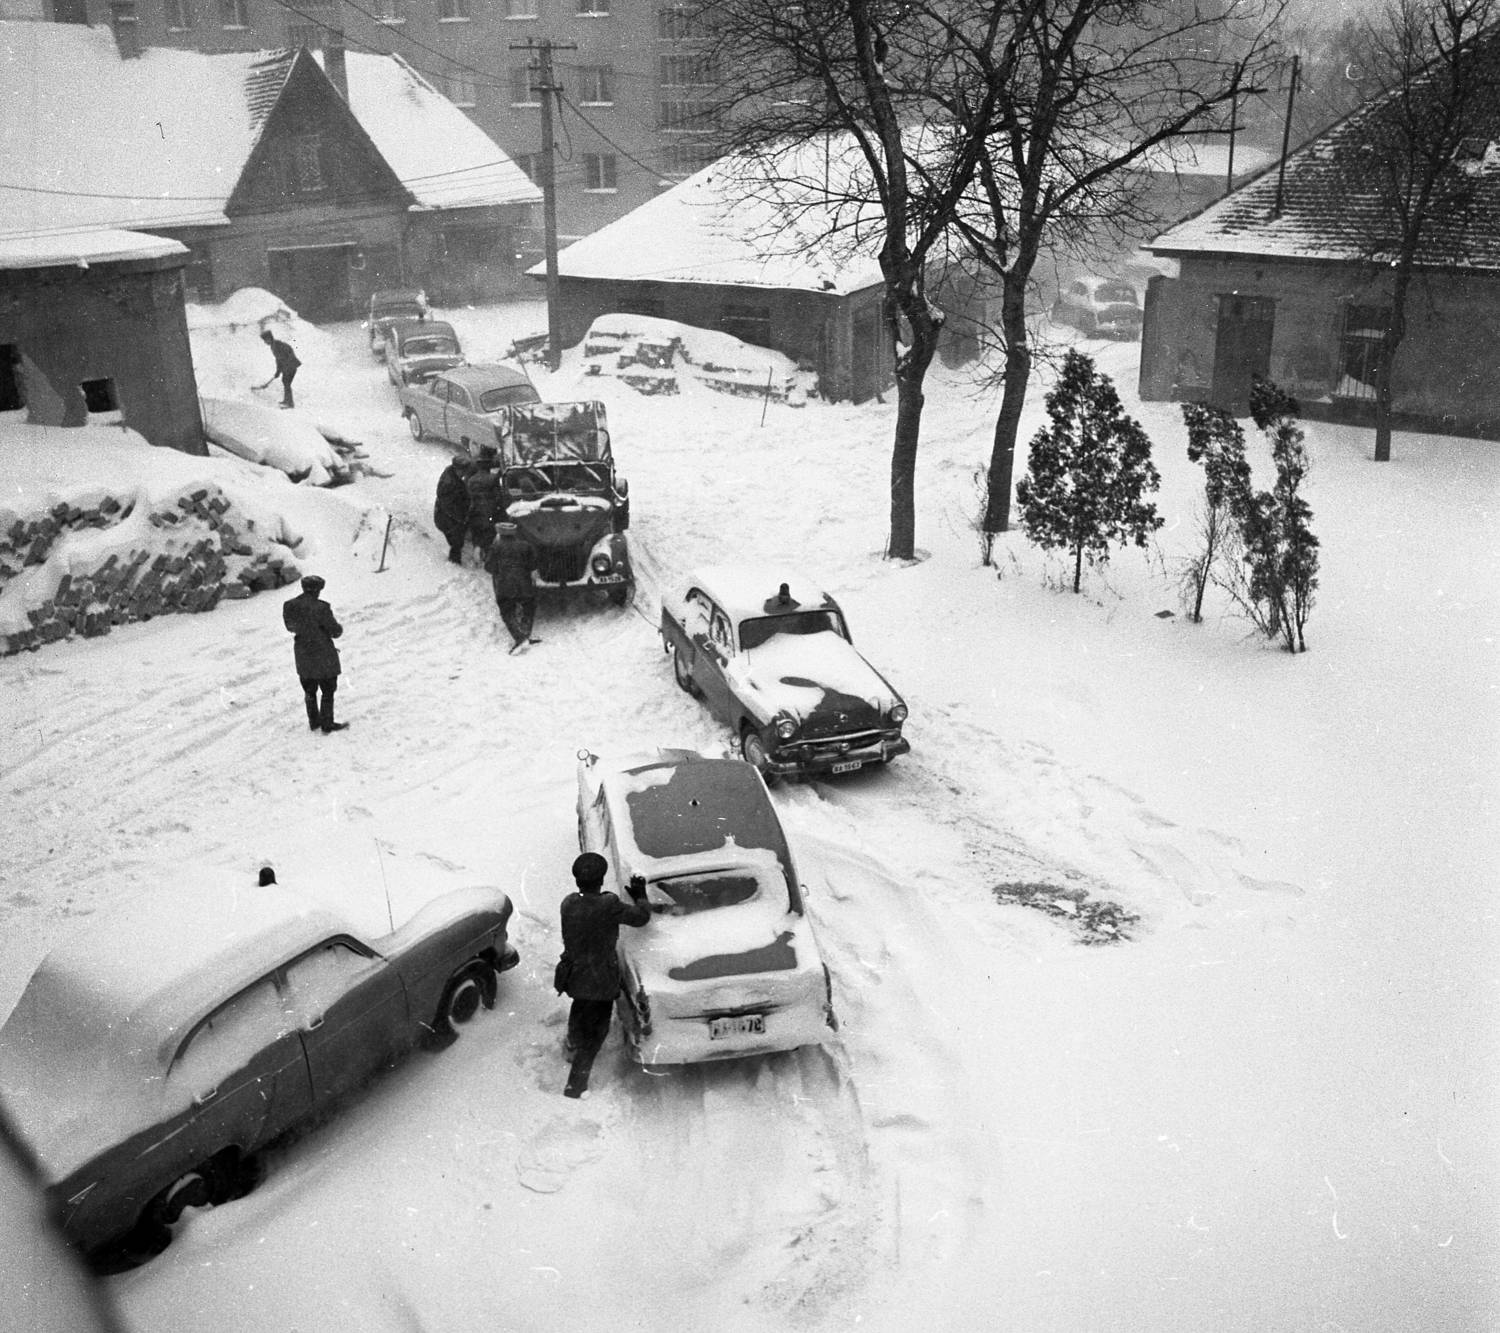 1966-ban Székesfehérvárra hatalmas hó zúdult le, ami szinte lehetetlenné tette a közlekedést. A Városi Rendőrkapitányság előtt készült fotón látható, hogy lapátolni kellett a havat, hogy haladhasson a forgalom.